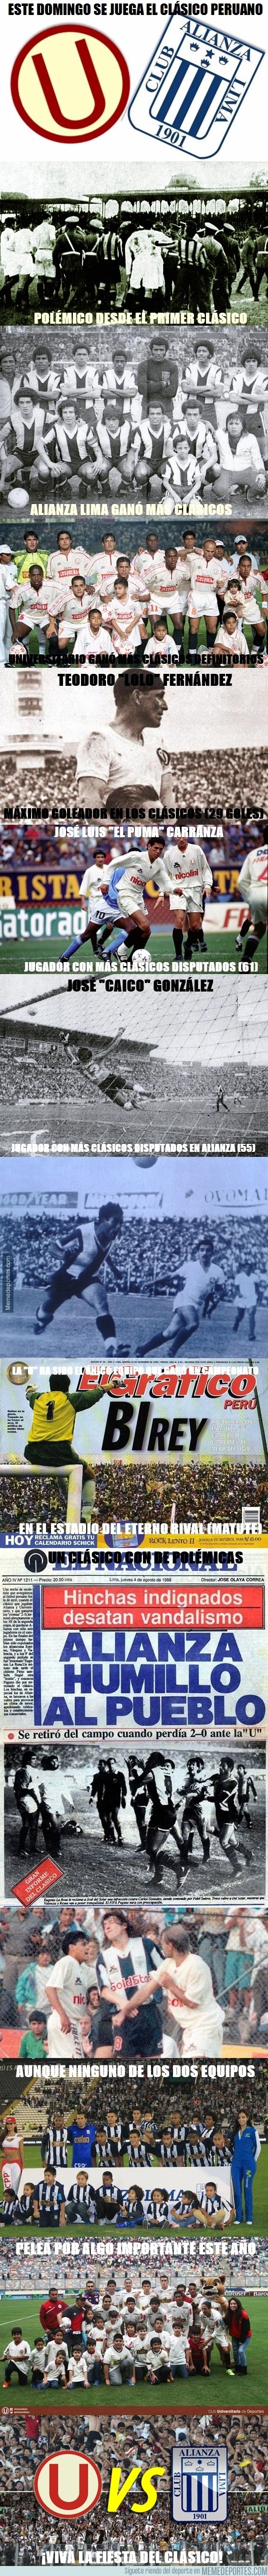 730893 - Clásico del fútbol peruano